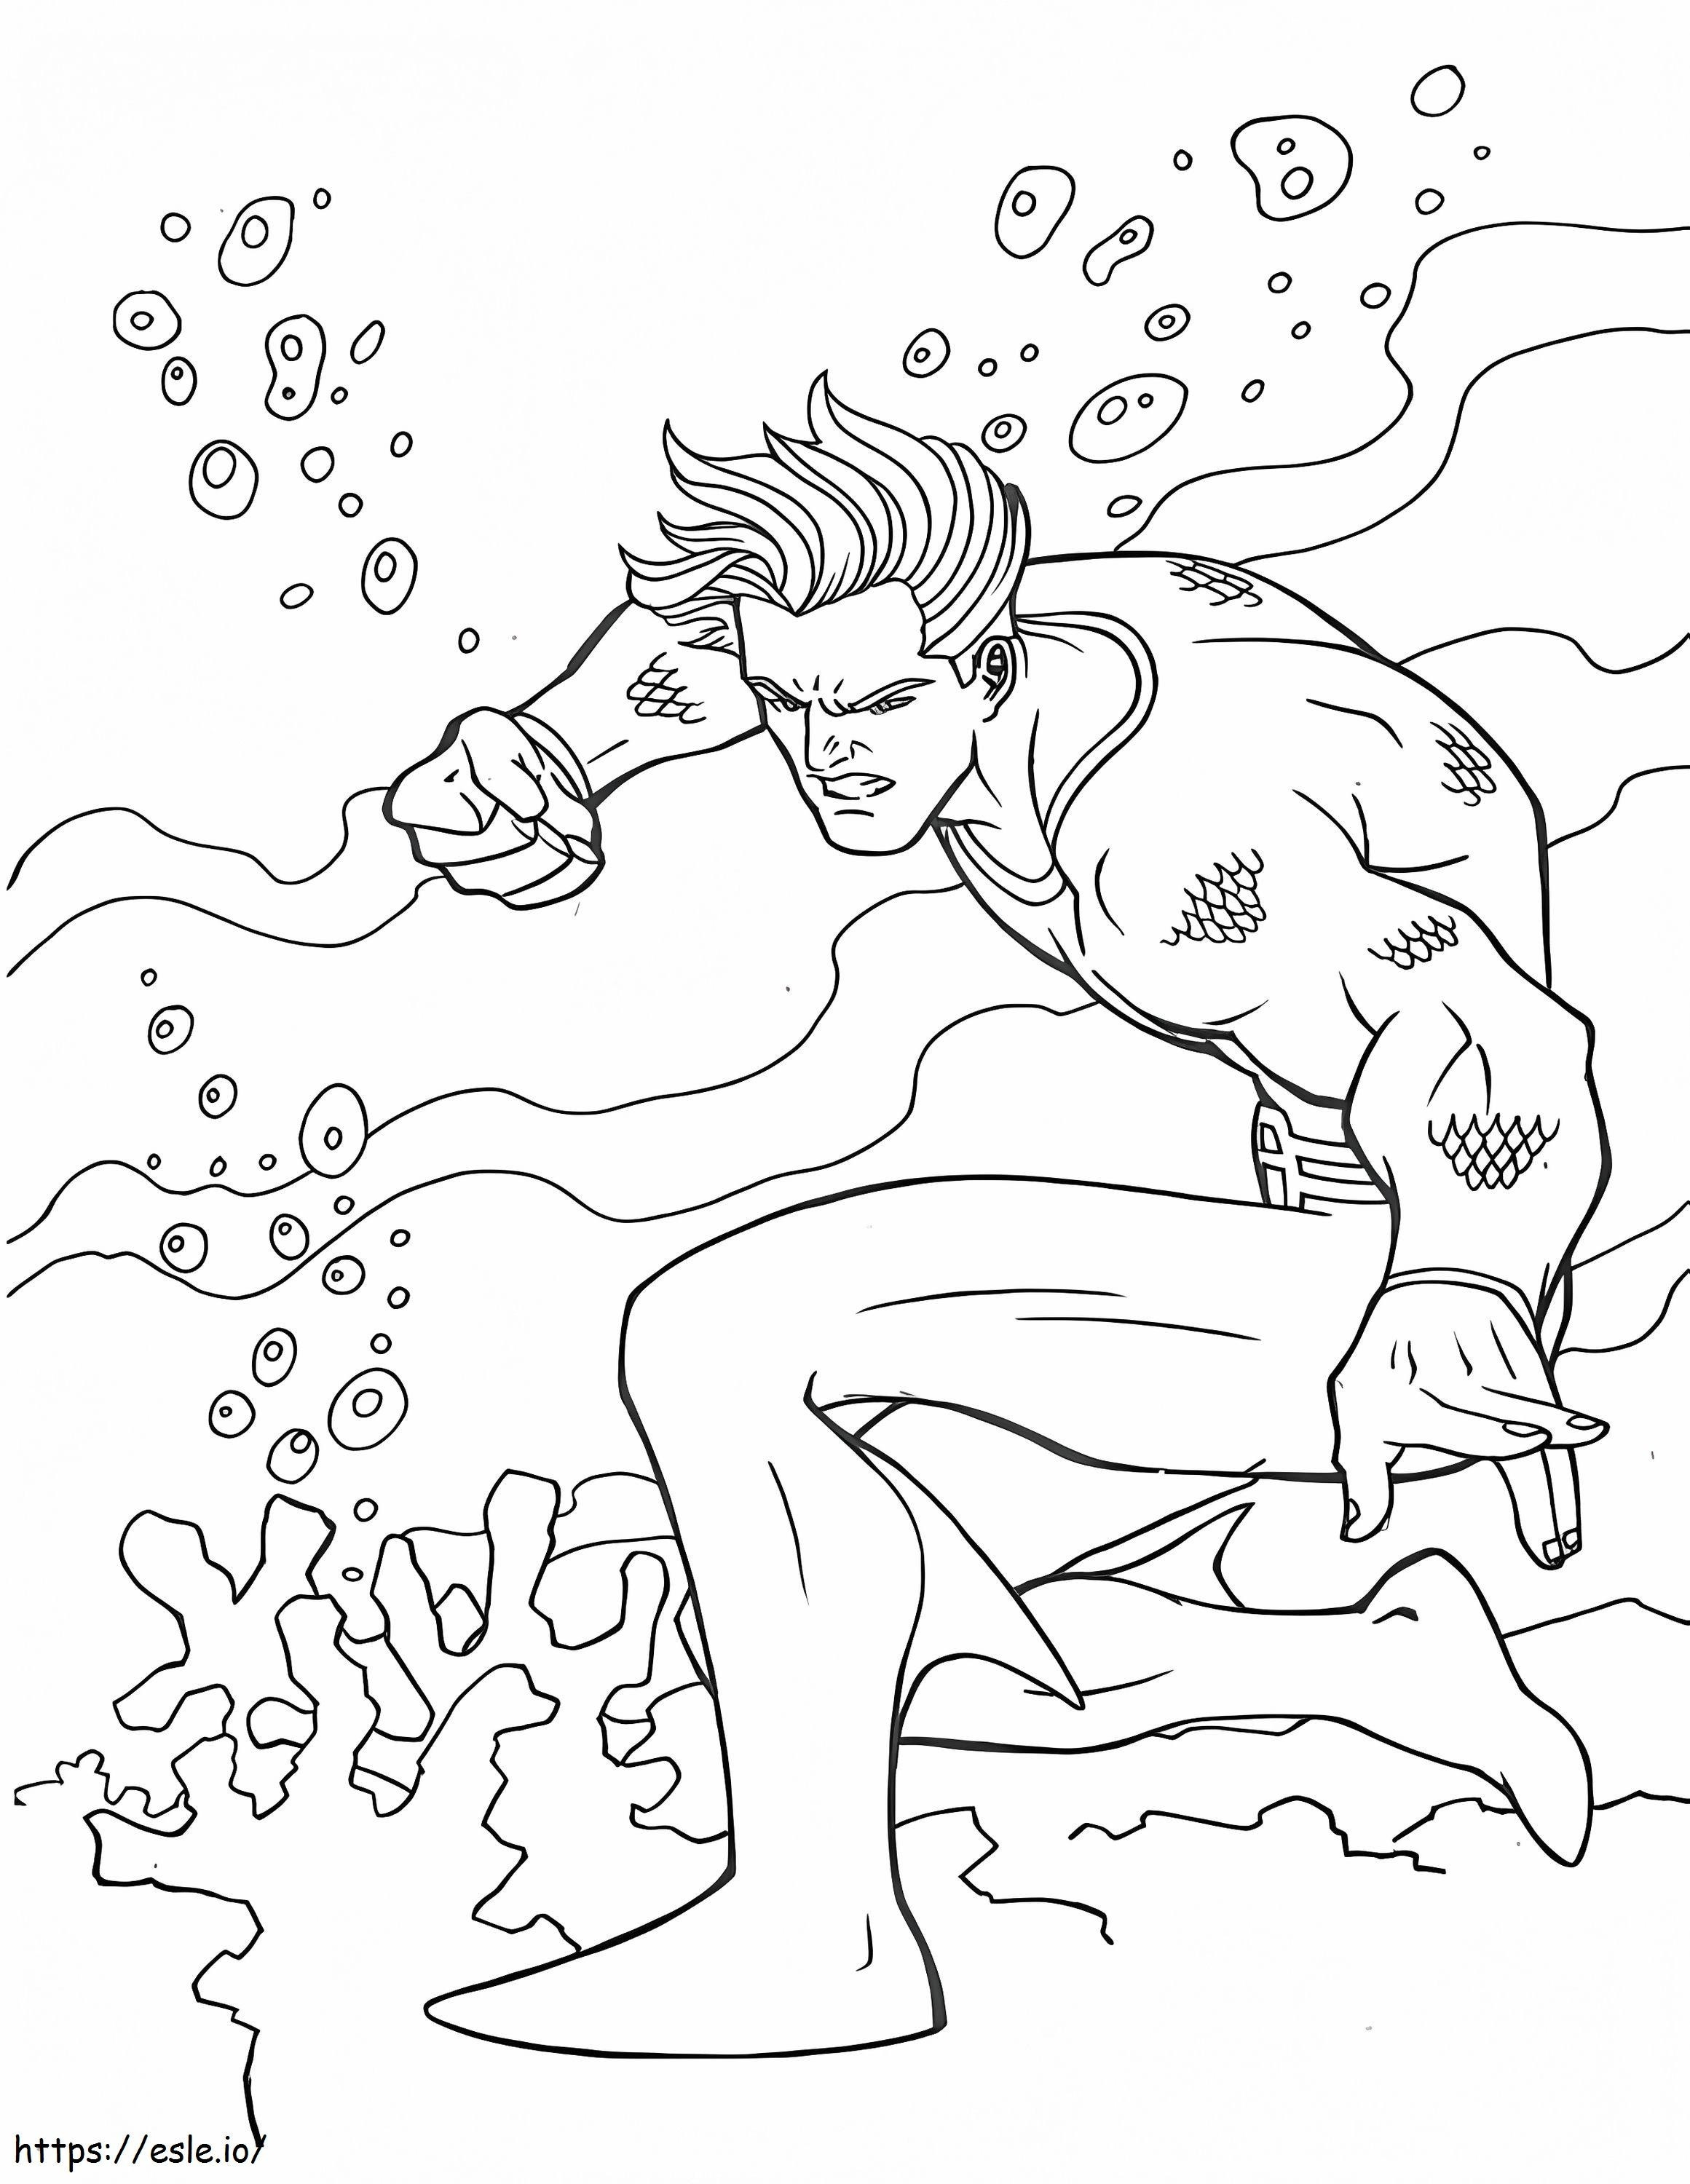 Angry Aquaman coloring page